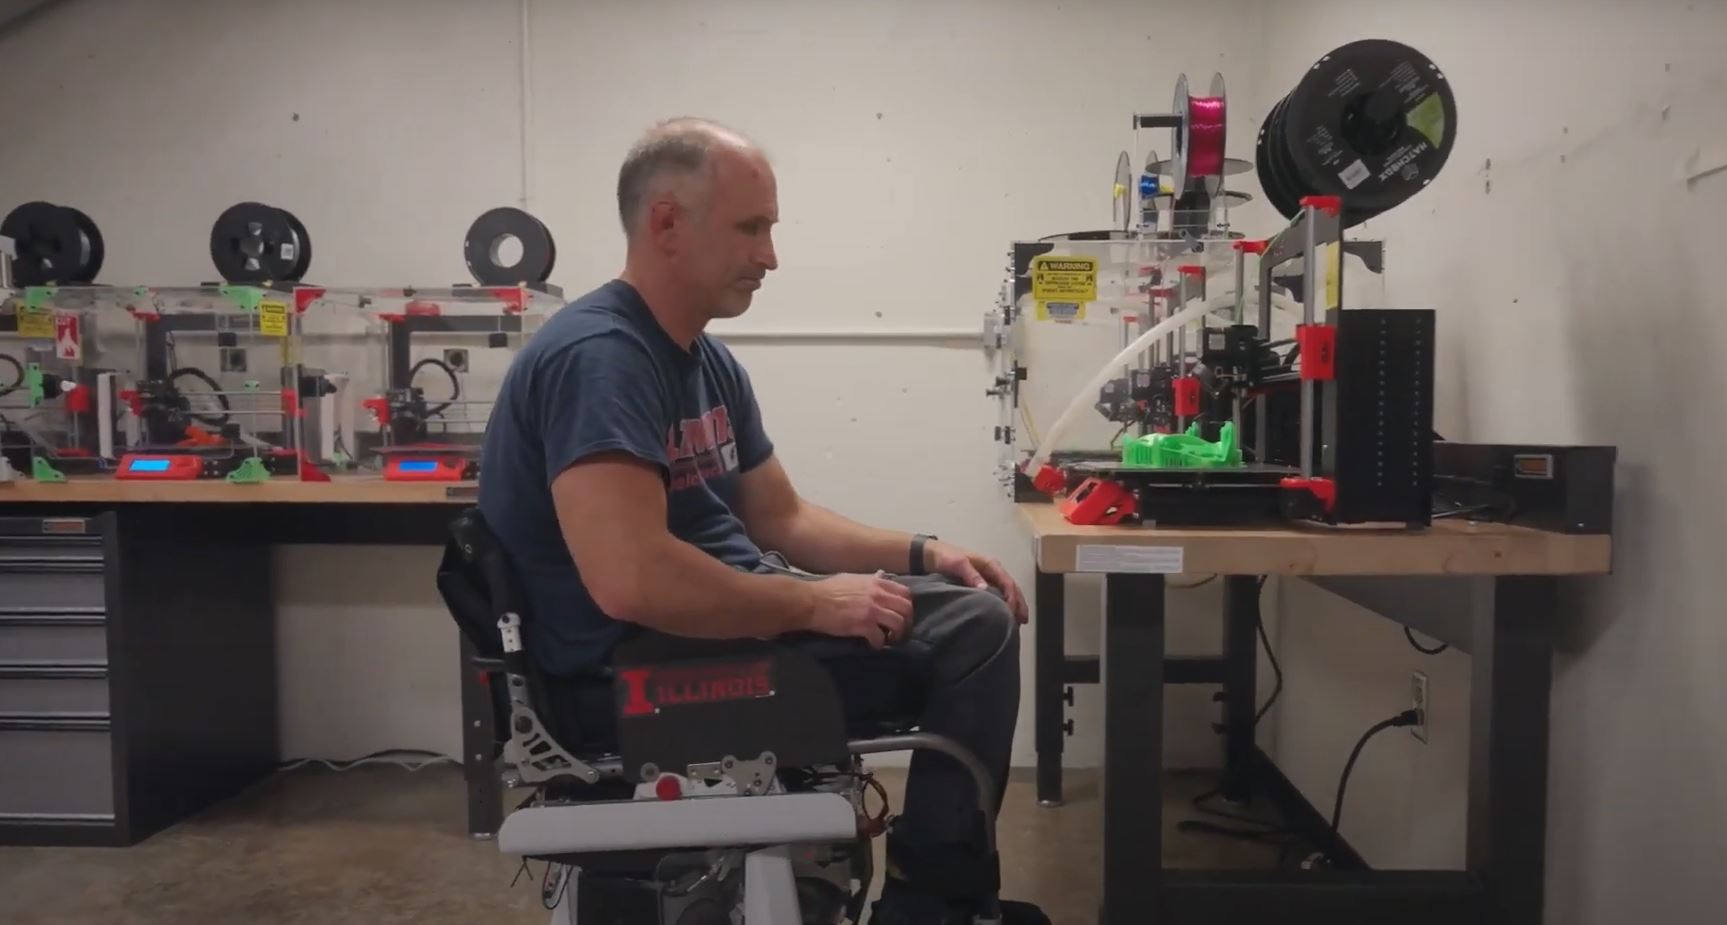 Adam Bleakney navigates a room using a hands-free wheelchair.